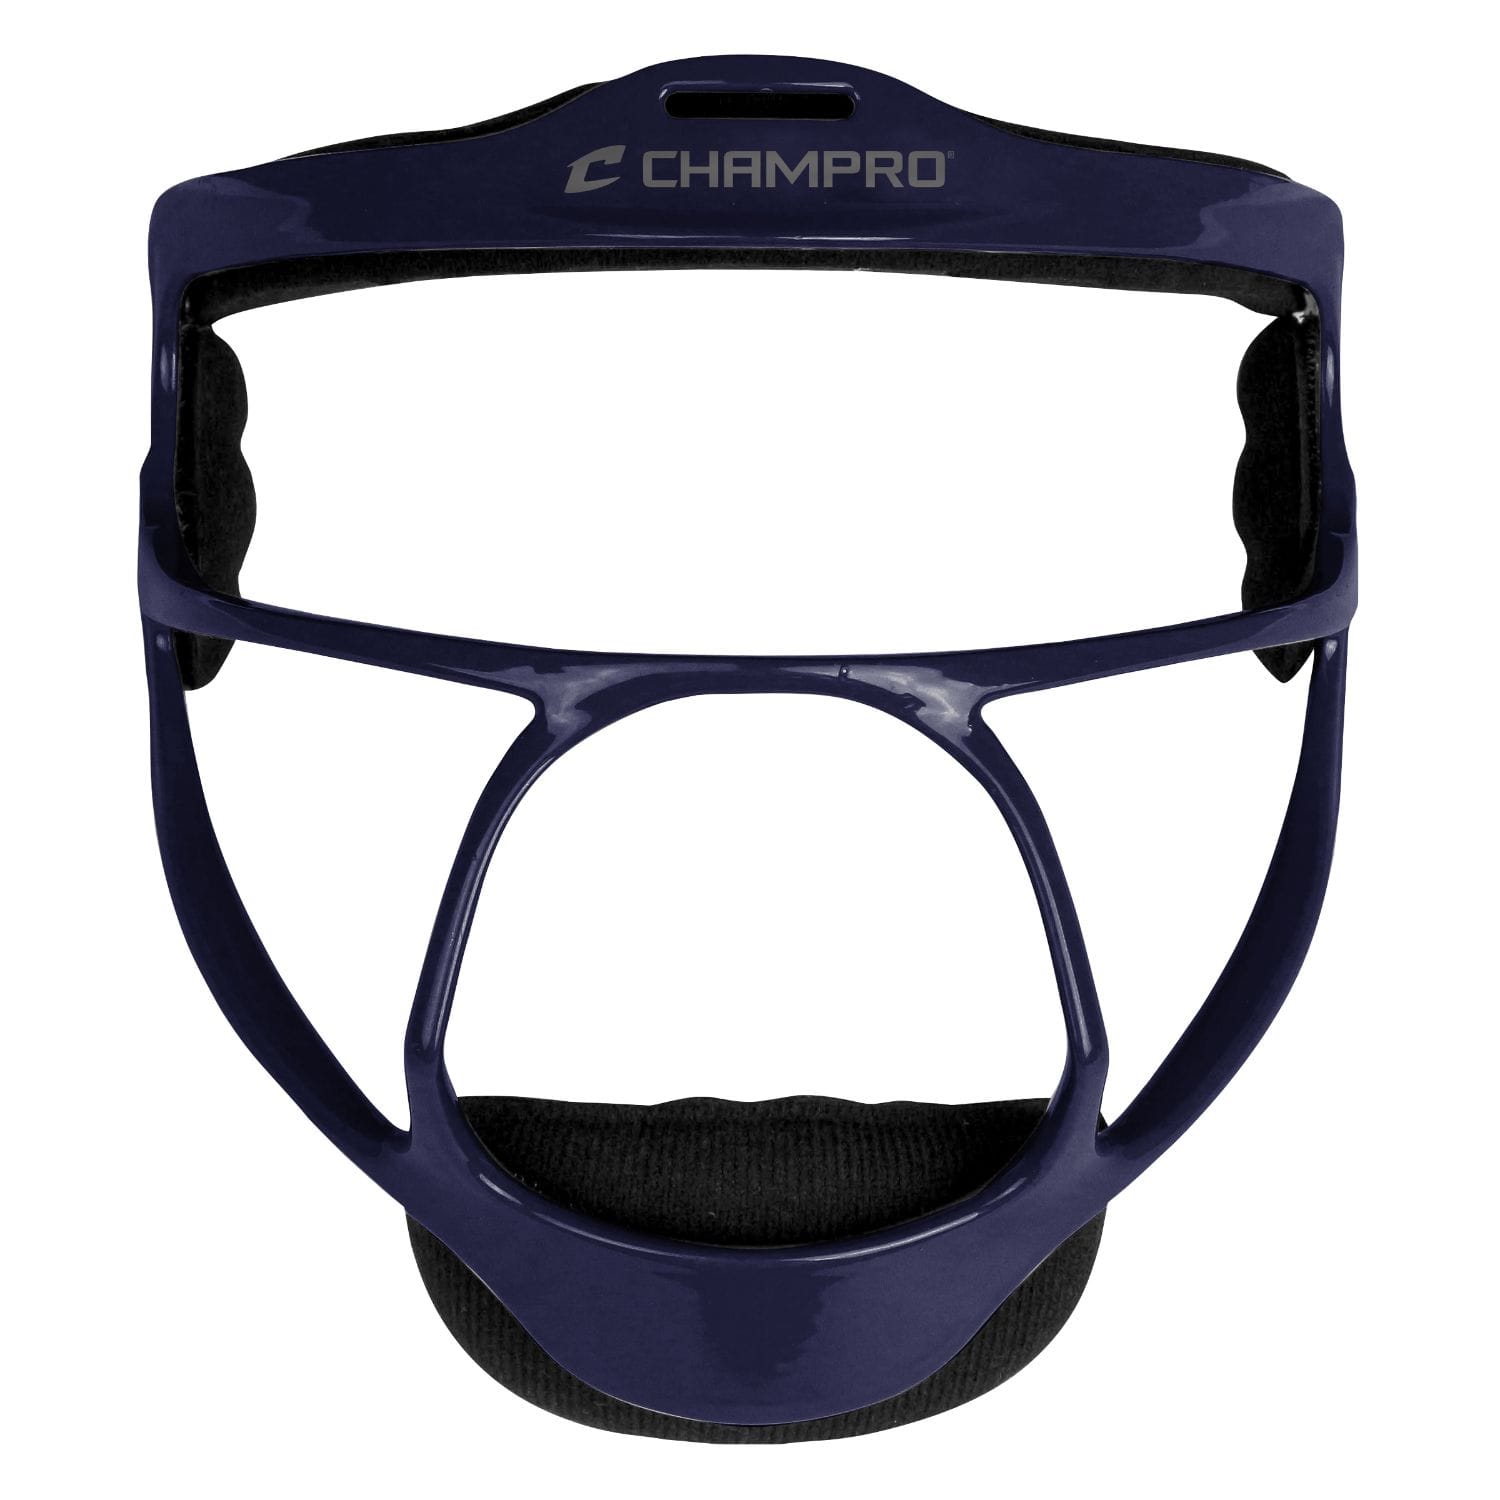 Champro Sports : Softball Champro Rampage Softball Fielders Facemask Navy